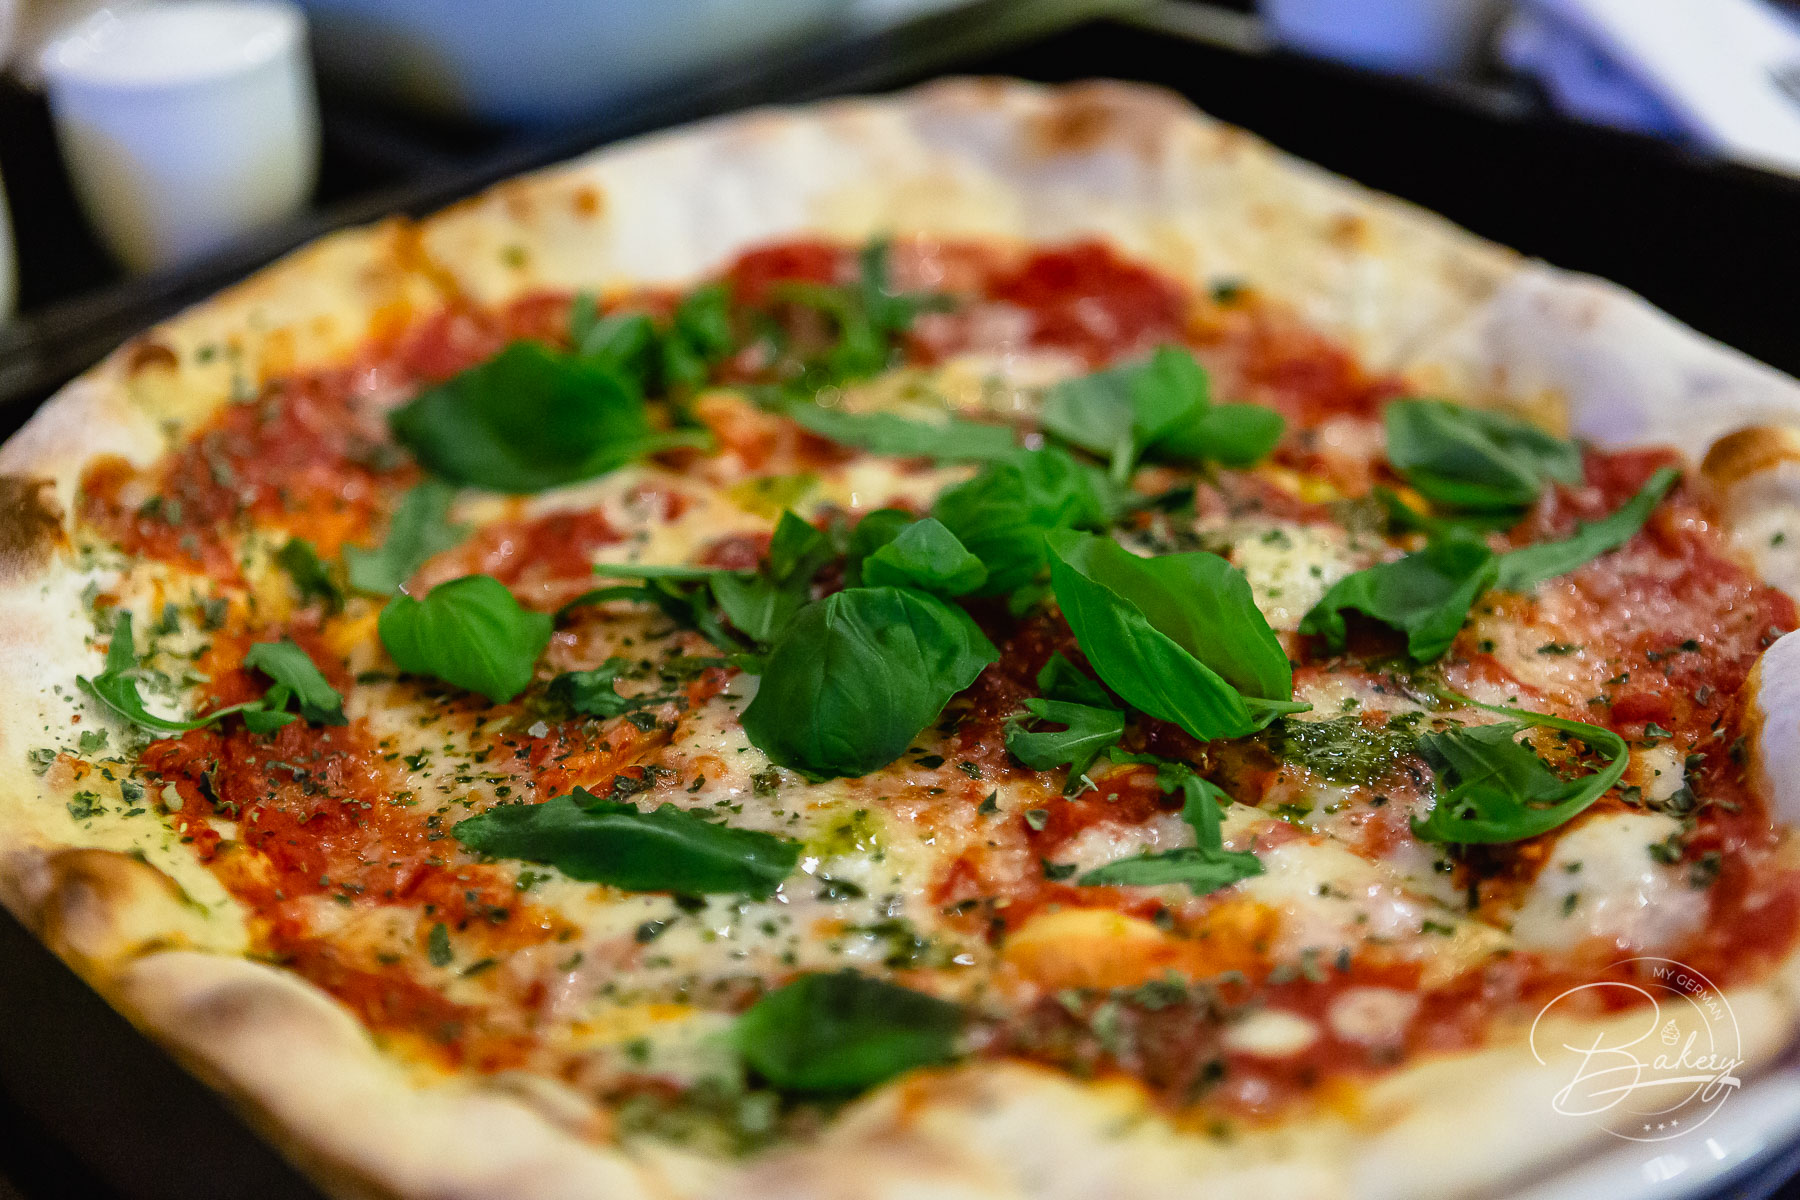 Pizzateig Rezept - bester Pizzateig selber machen - Pizza Grundrezept Rezept für Pizza - schneller Pizzateig - Pizza selber backen - Pizzateig mit Mehl, Wasser, Hefe, Öl, Salz und Gewürze. Leckeres Pizzateig Rezept